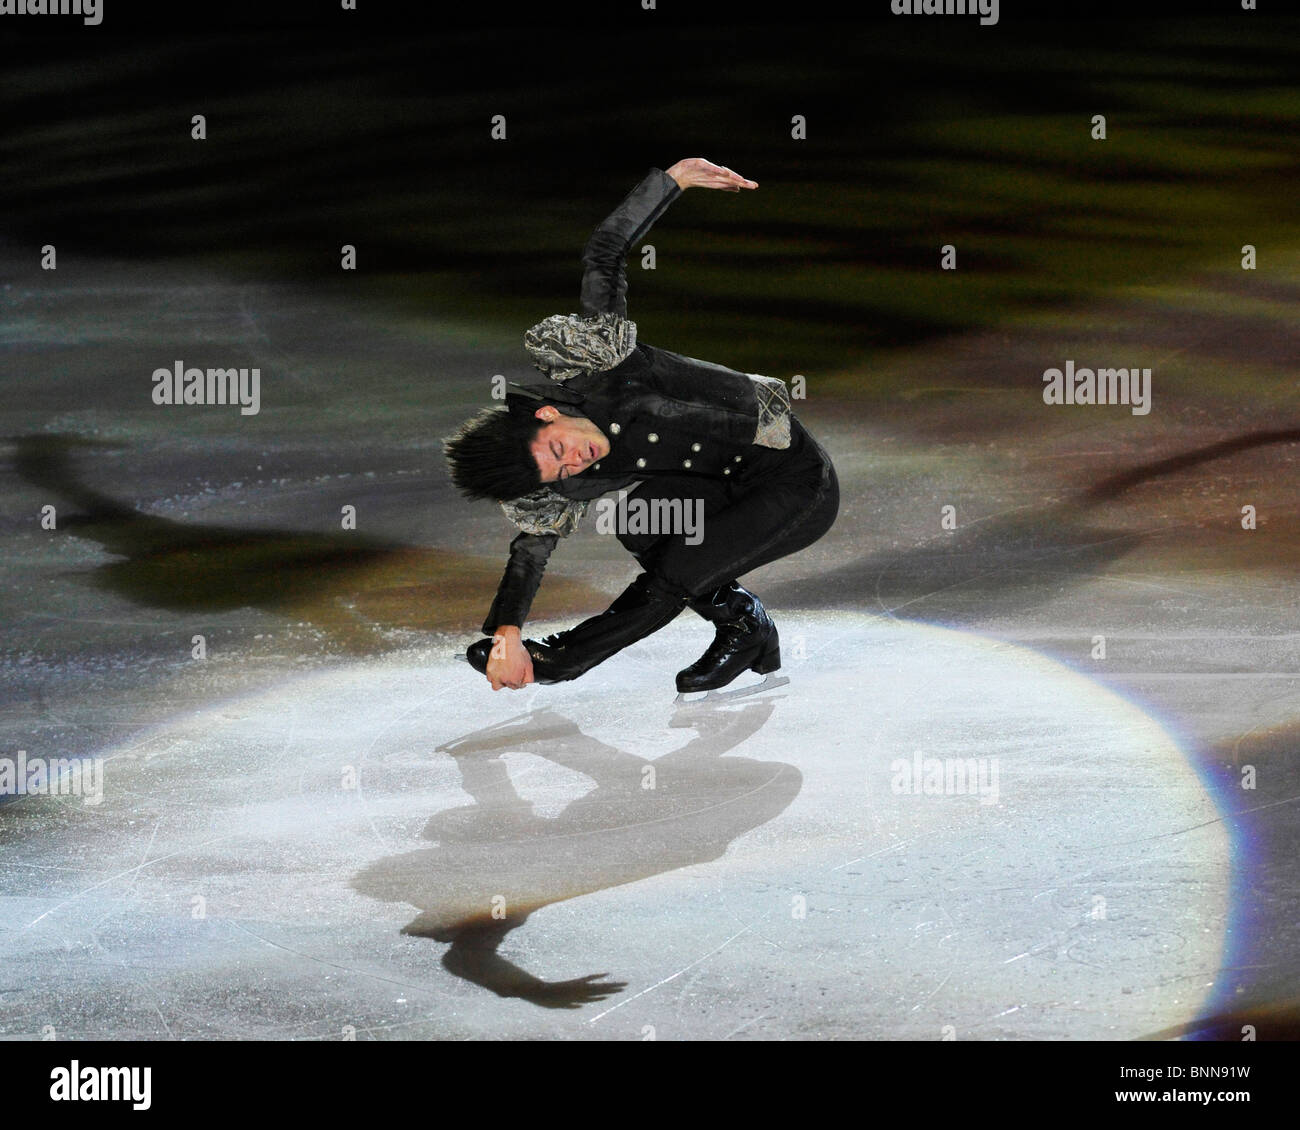 Le sport suisse ice ice hall figure skating Stephane Lambiel, patineuse artistique modèle ne libération Banque D'Images